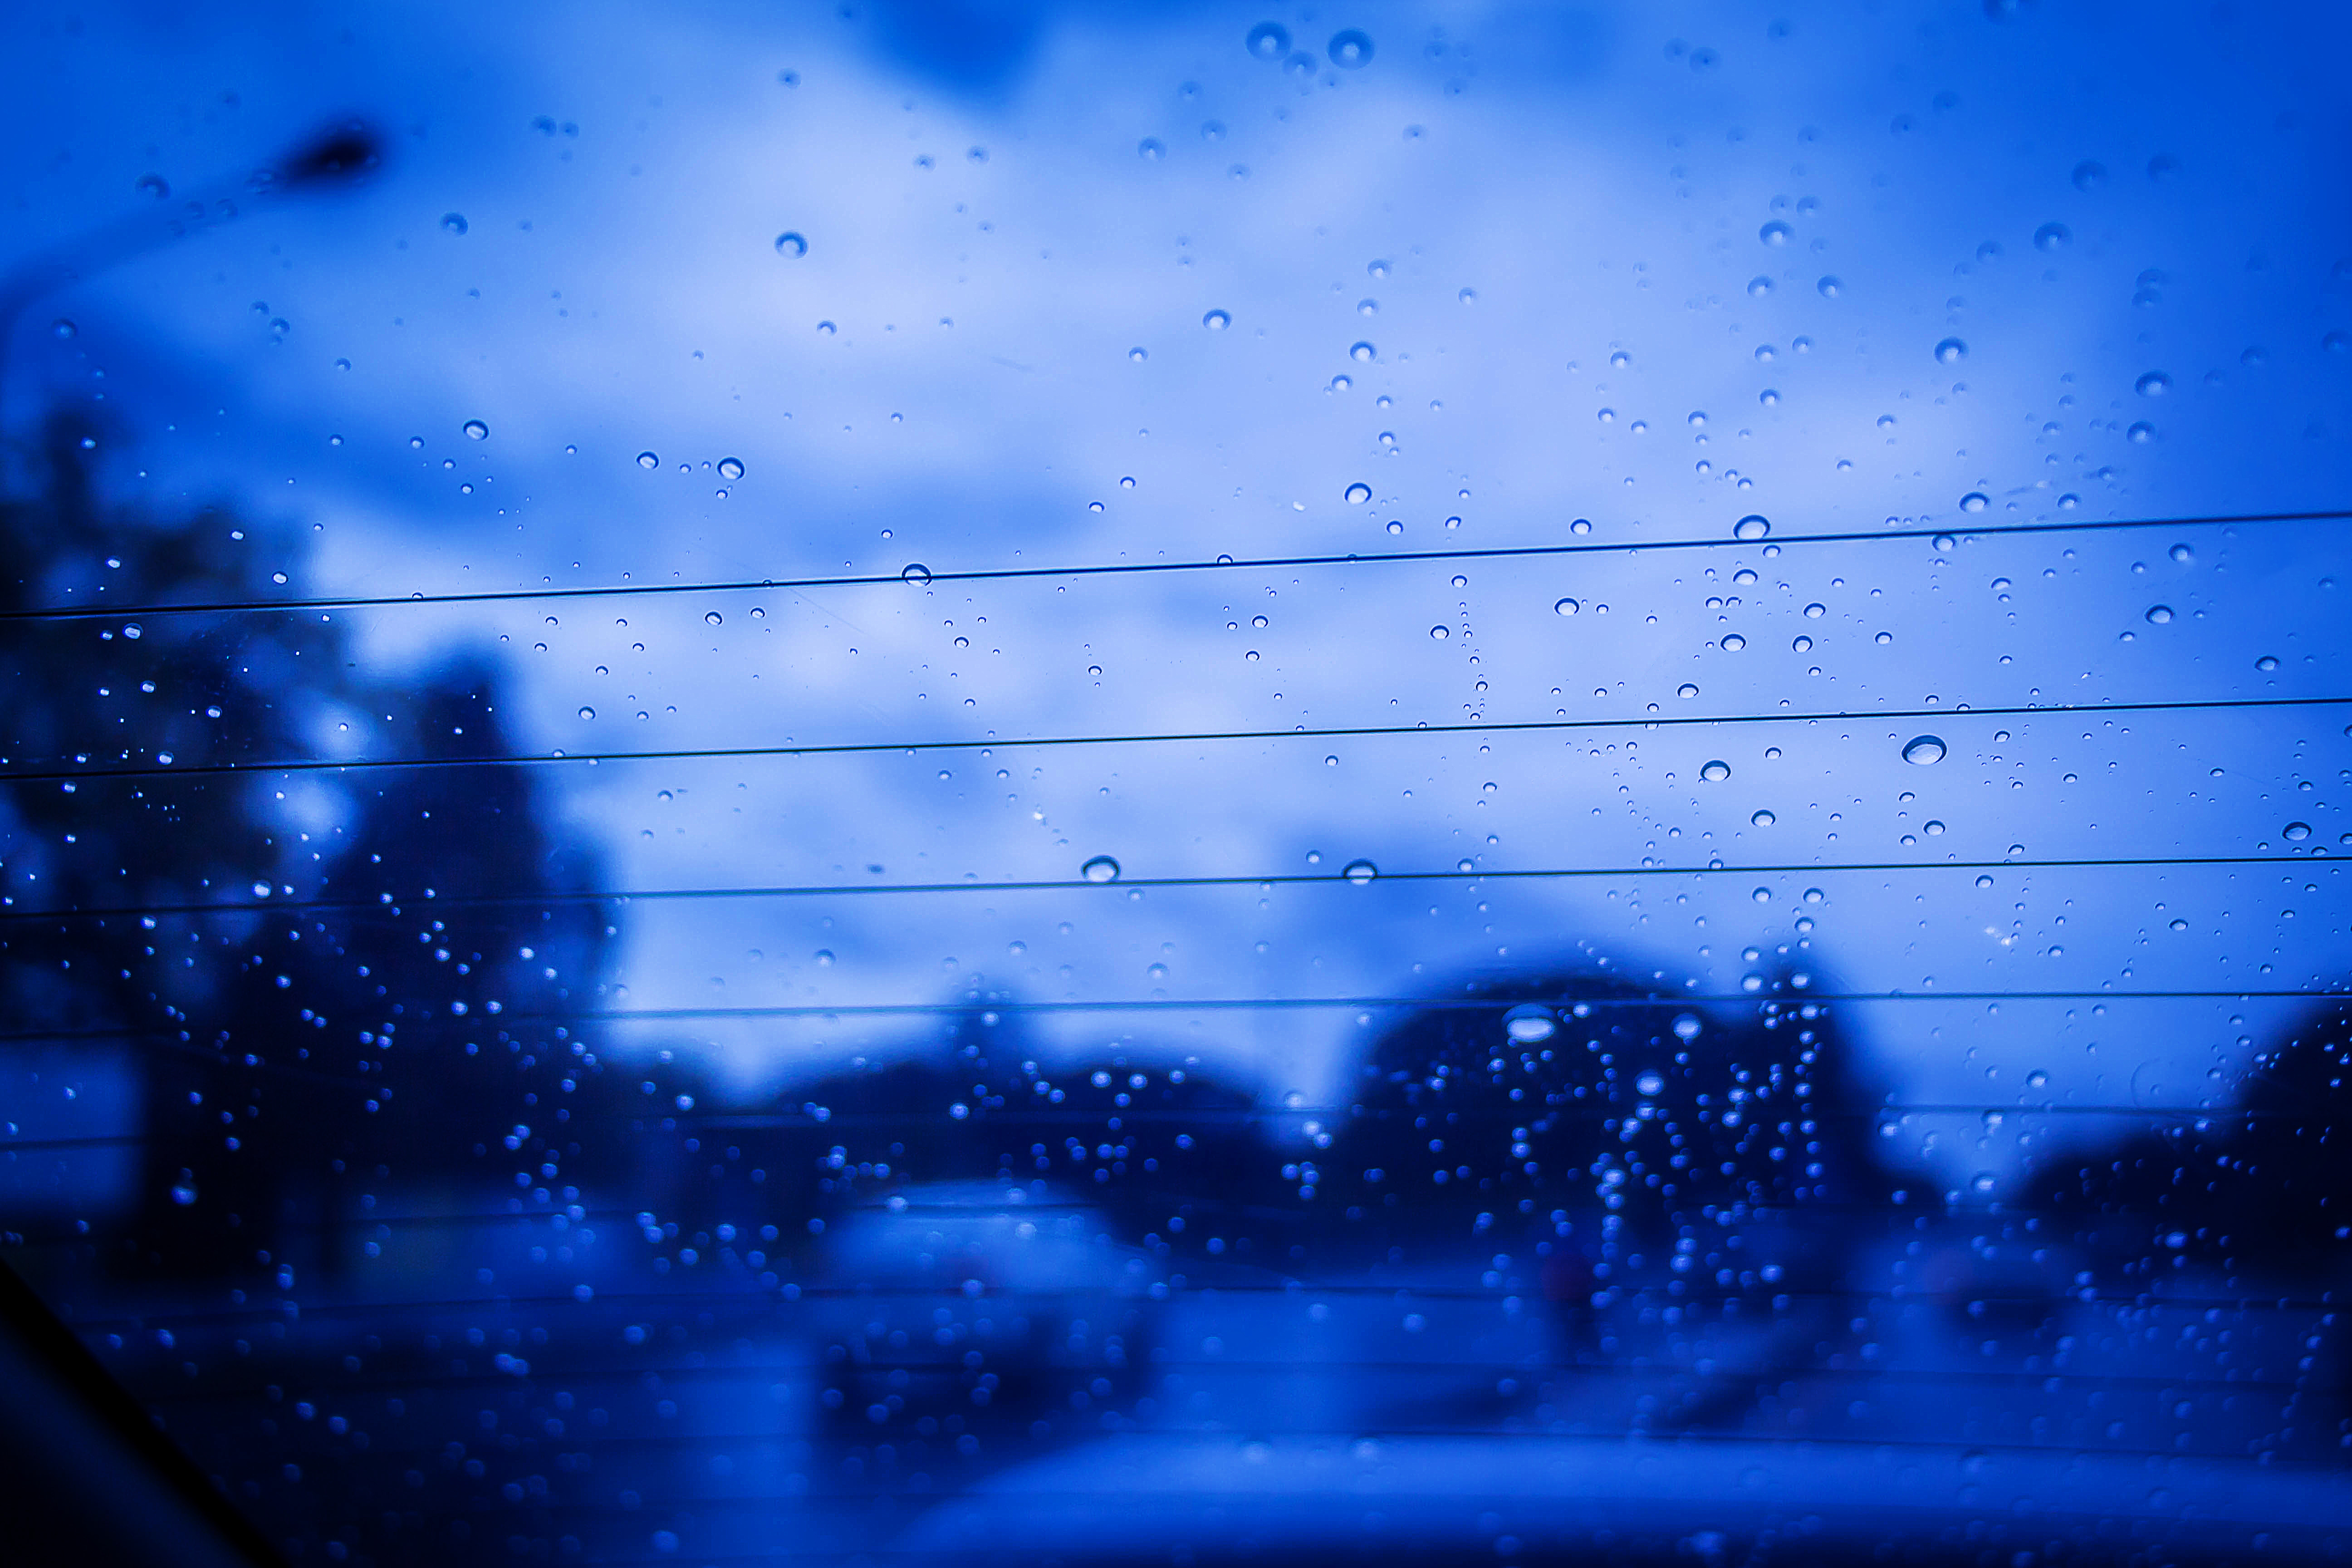 Rain Sad Blue Car Storm Evening Glass Blurred Traffic Road Heavy Cold Sky Window 5184x3456